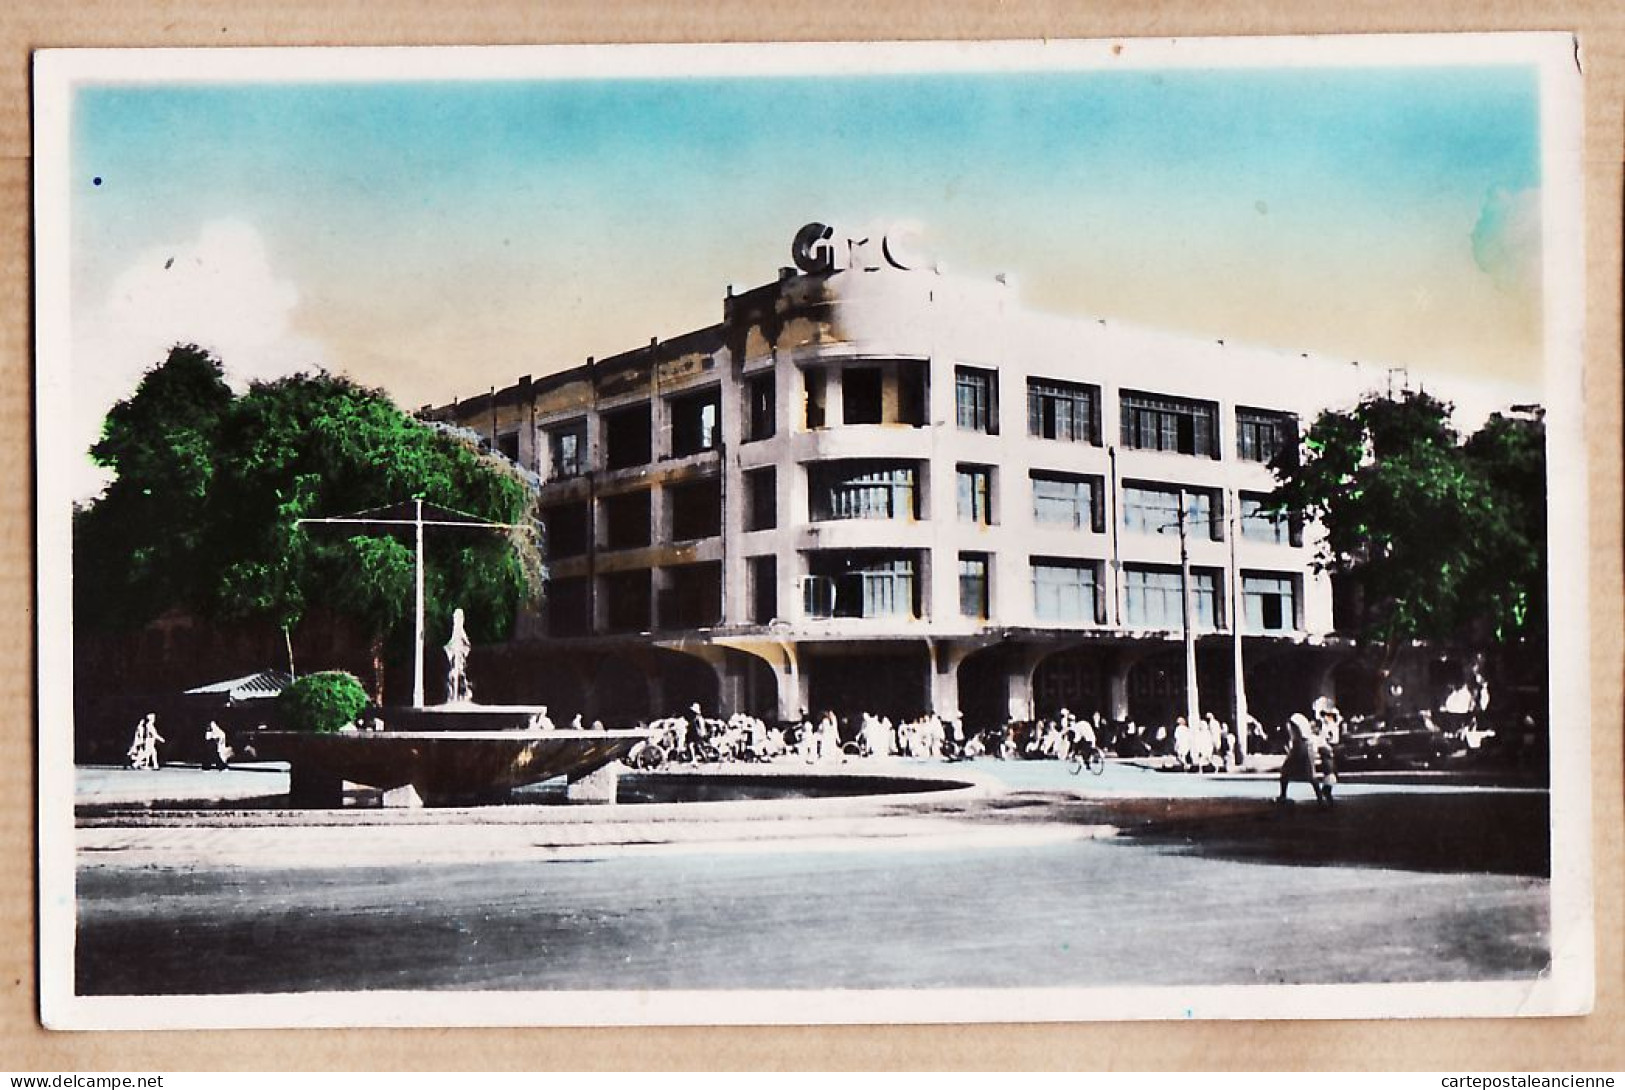 01032 ● Viet-nam Tonkin SAIGON - G.M.C Grands Magasins CHARNER Surélevés D'un Nouvel étage 1950s Indo-Chine  - Vietnam